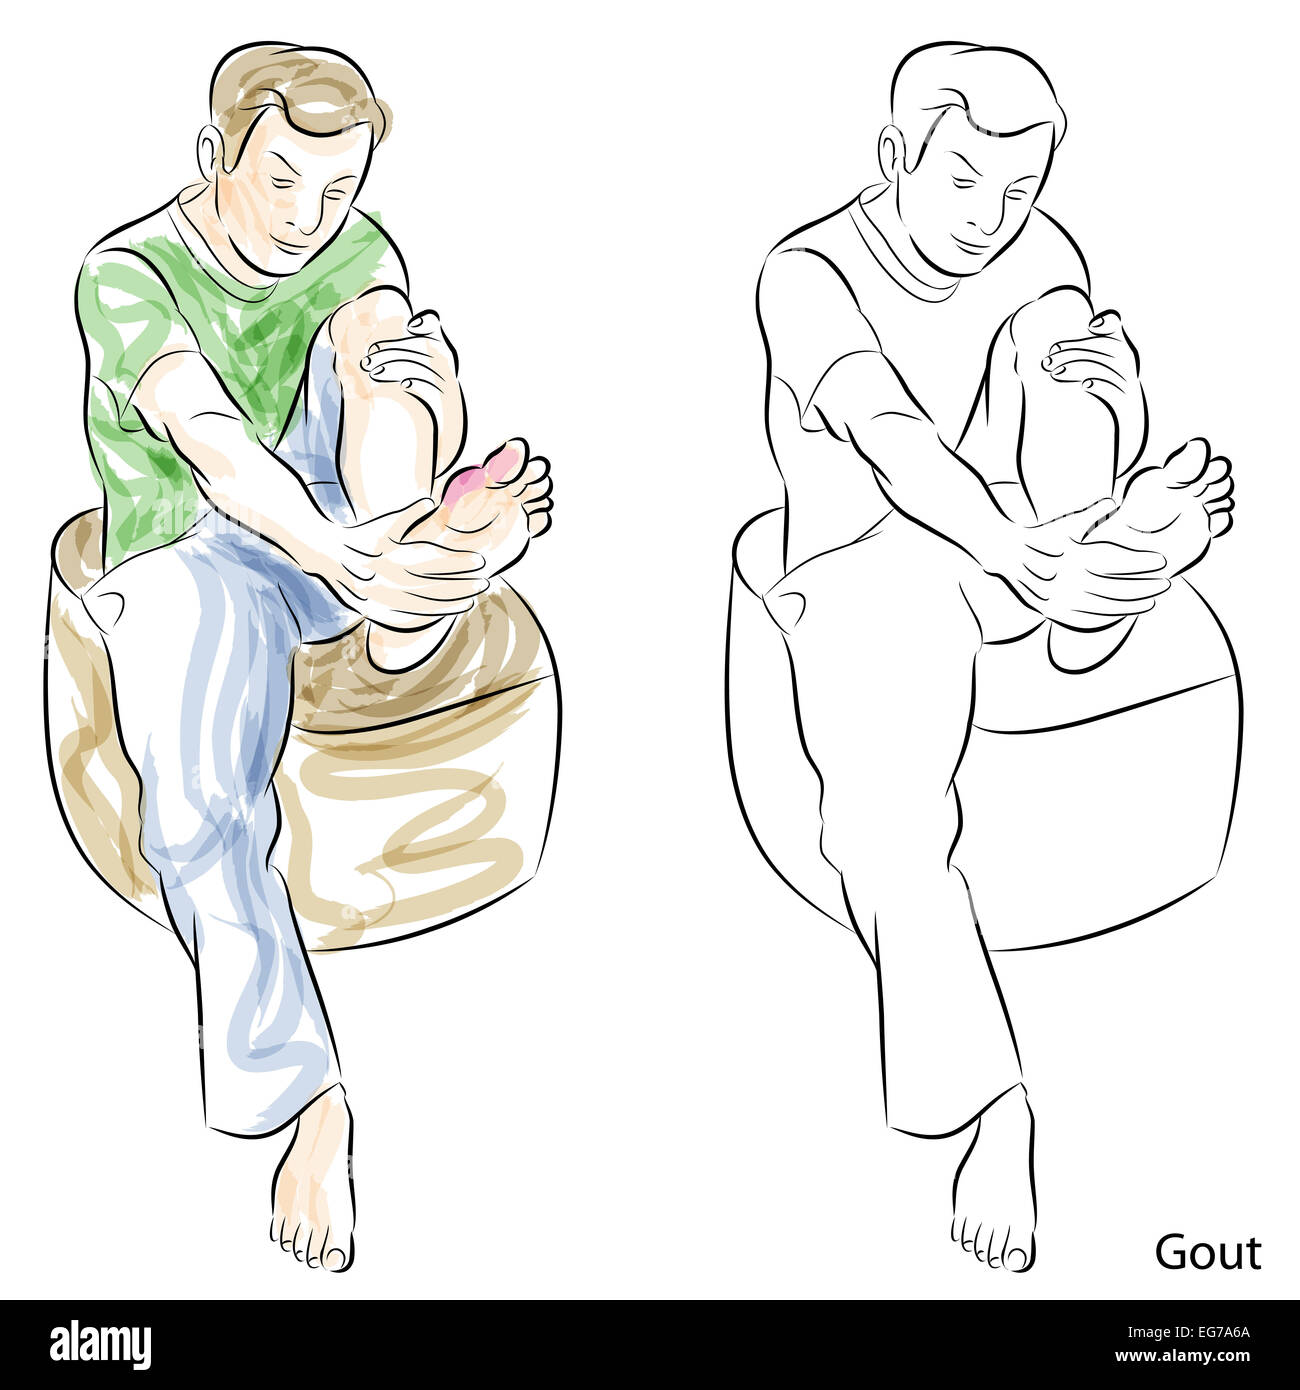 An image of a man massaging gout feet. Stock Photo